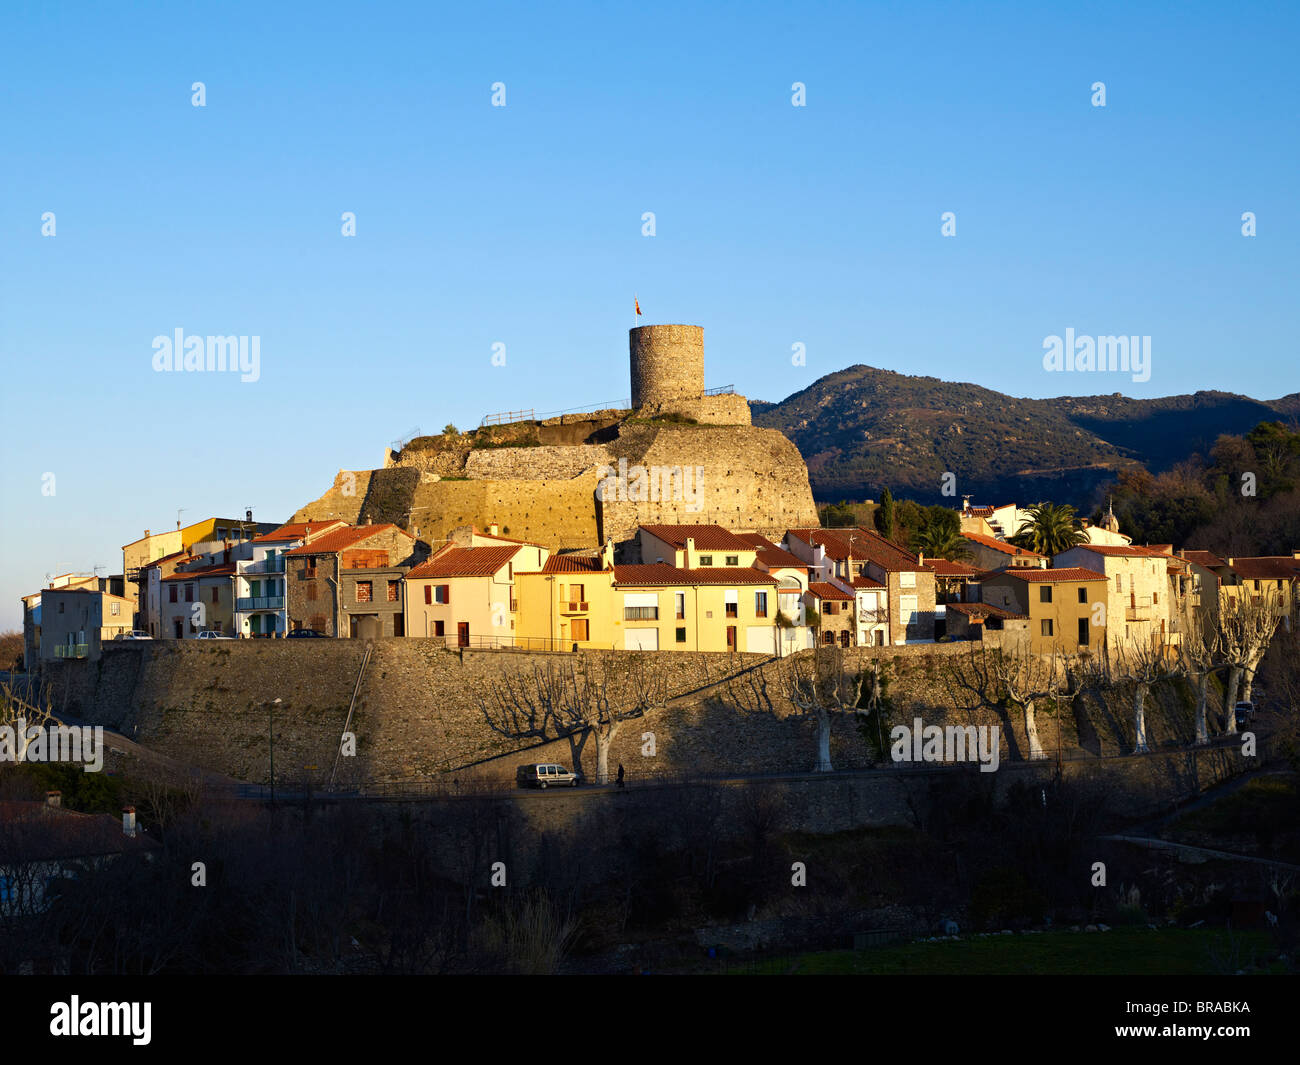 Le vieux village et tower, Laroque des Albères, Pyrénées Orientales, France, Europe Banque D'Images